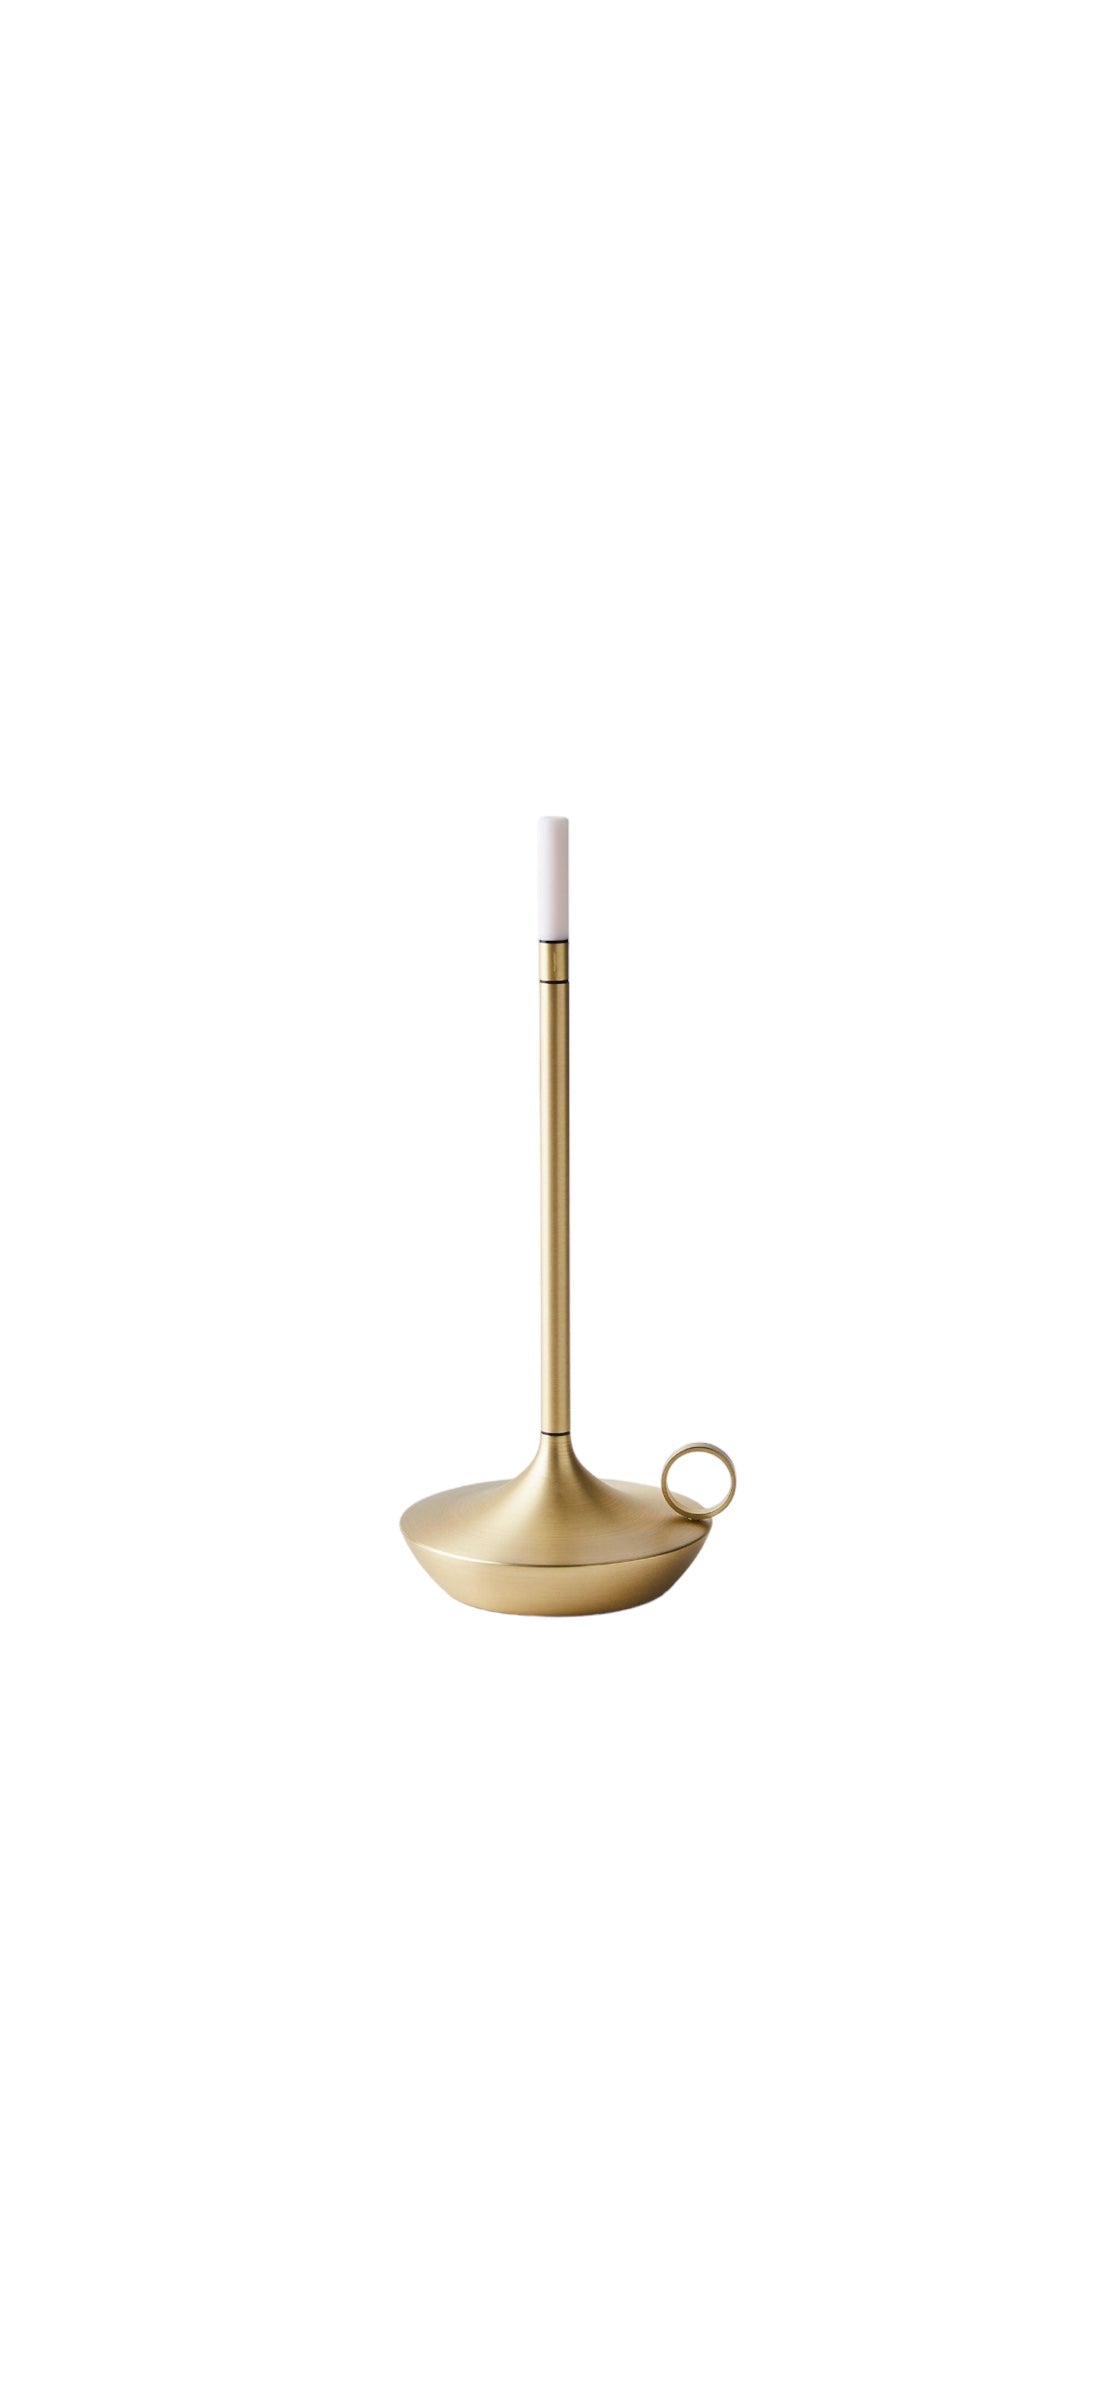 Rechargeable Brass Wick Lantern